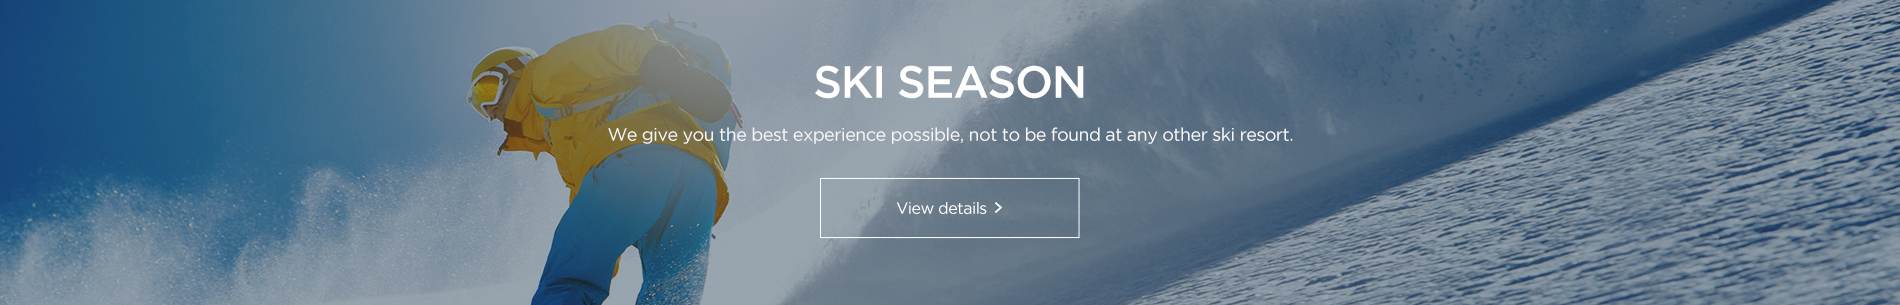 ski webzine